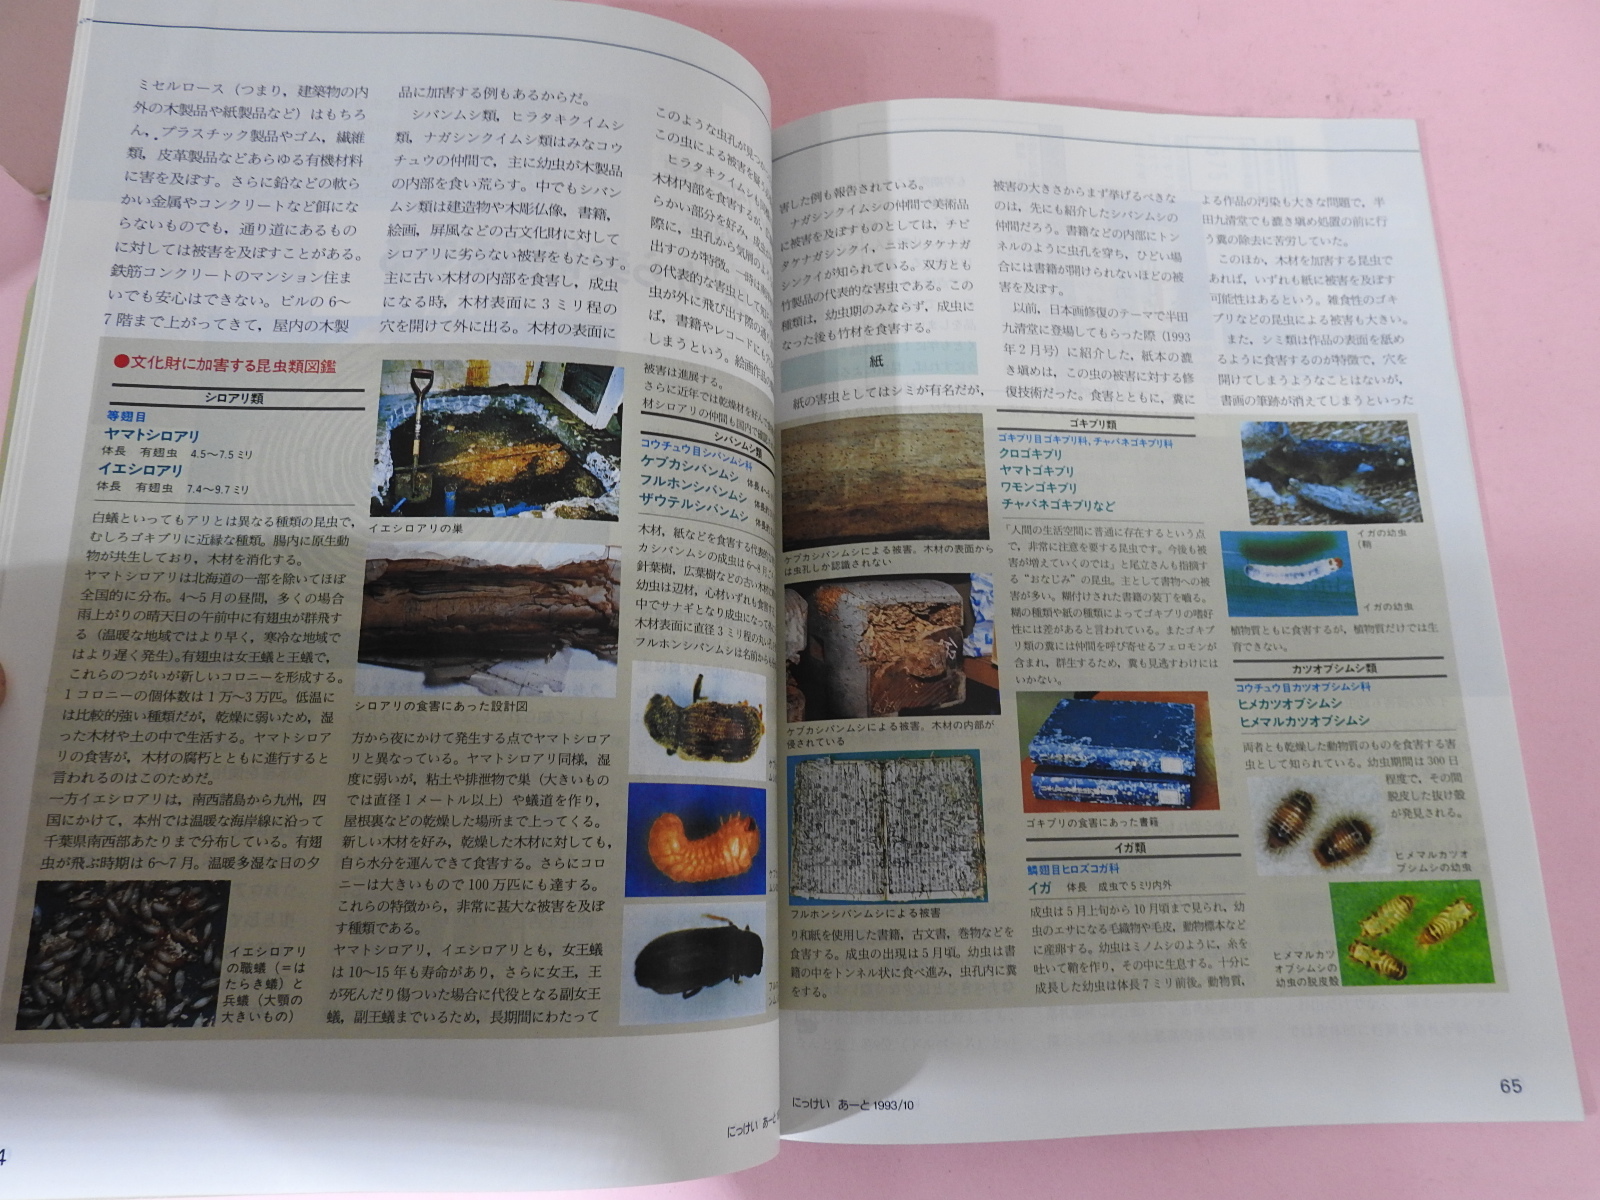 1993년 일본미술 잡지